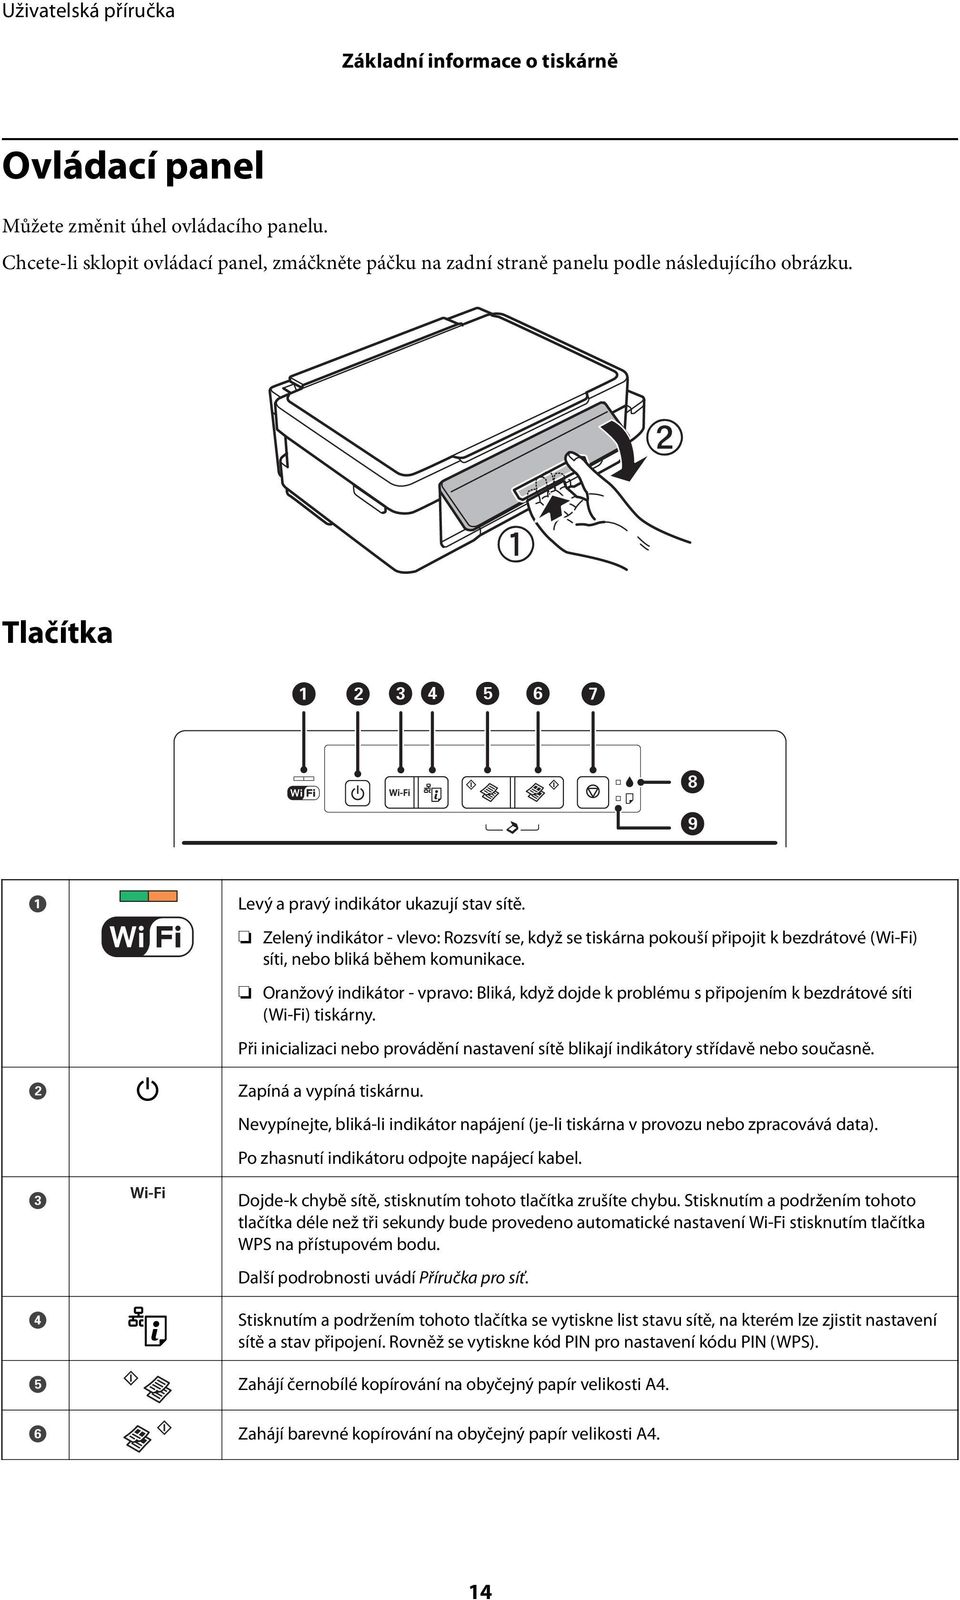 Oranžový indikátor - vpravo: Bliká, když dojde k problému s připojením k bezdrátové síti (Wi-Fi) tiskárny. Při inicializaci nebo provádění nastavení sítě blikají indikátory střídavě nebo současně.